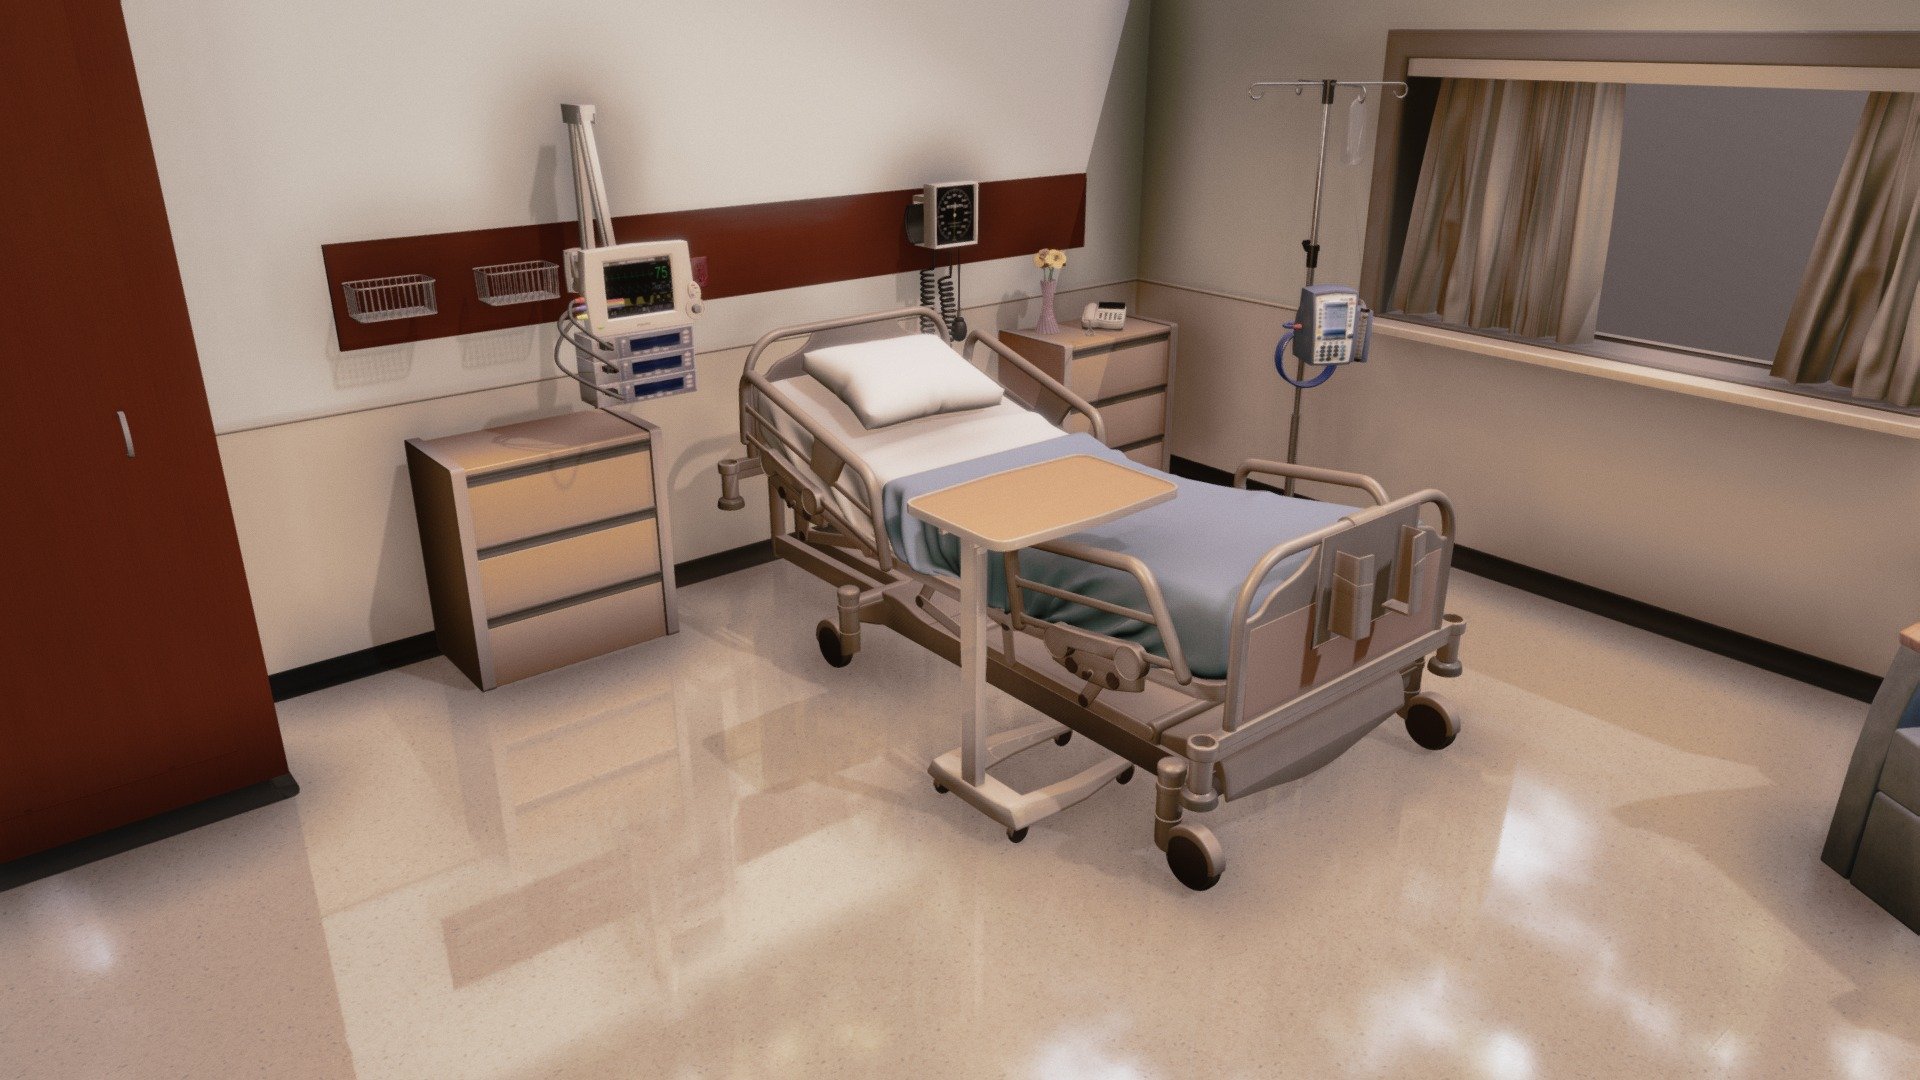 Concept Hospital Room - 3D model by Diving Dove Studios (@divingdove) 3d model